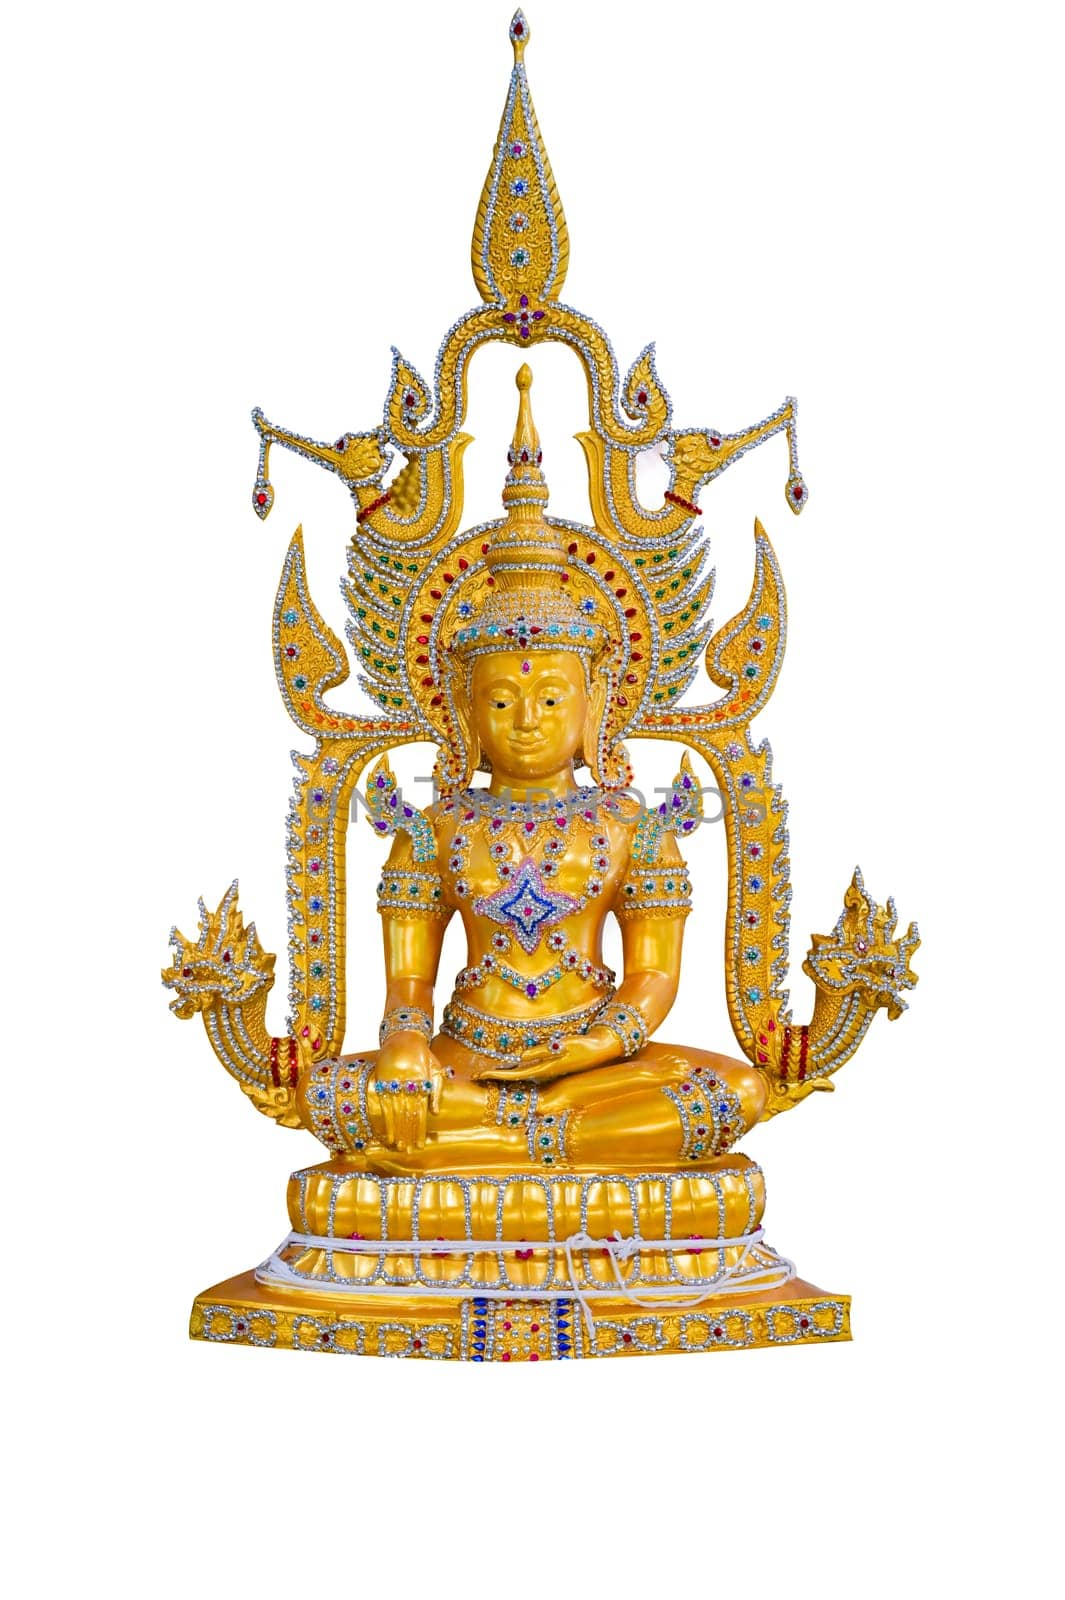 Buddha image on white background isolate